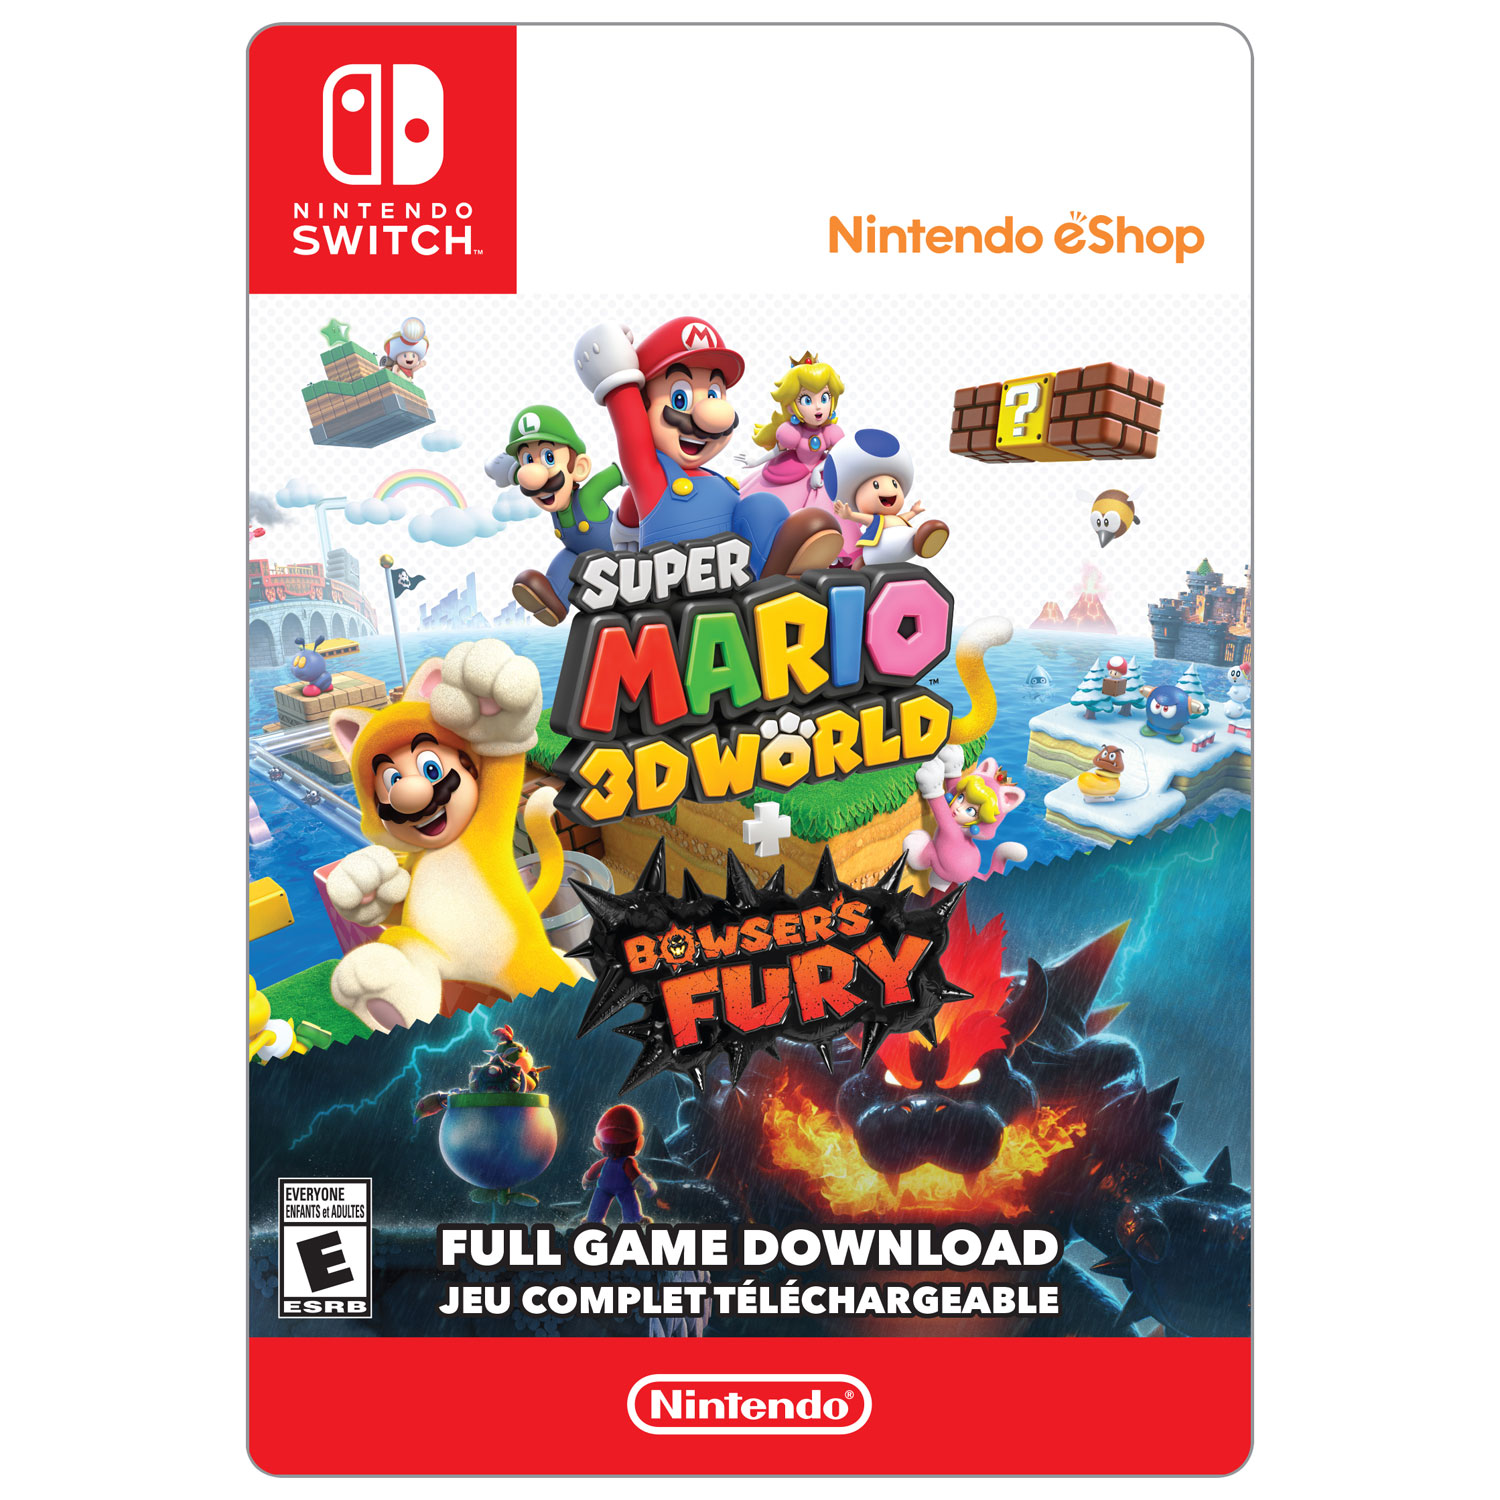 Super Mario 3D World Bowser Fury Nintendo Switch Game Deals 100% Oficial  Original Cartão de